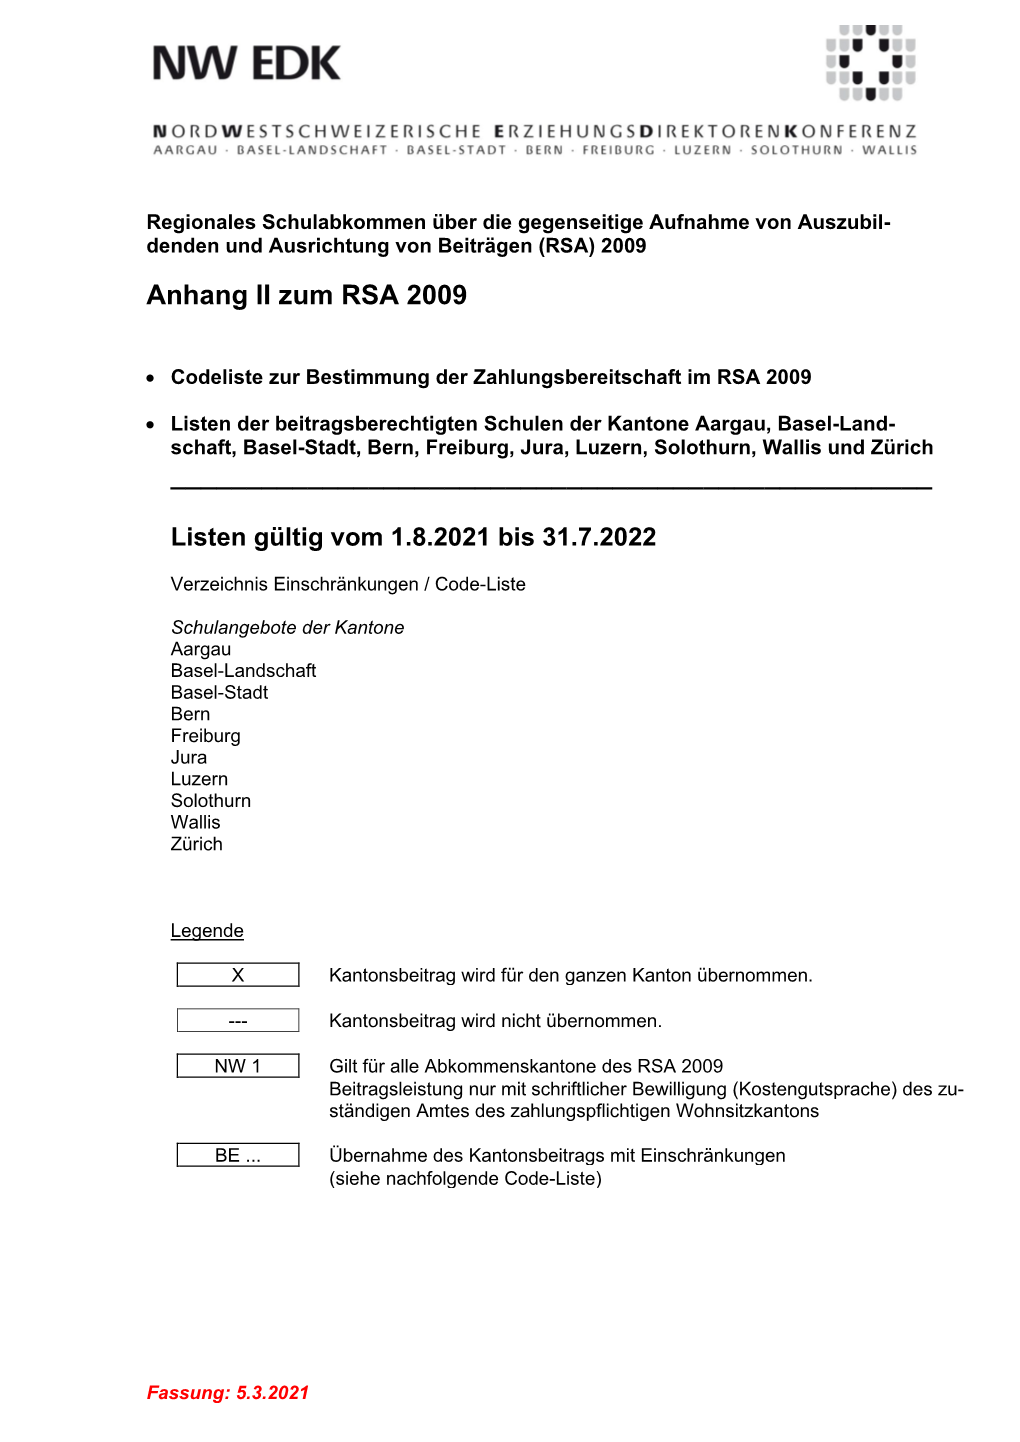 Regionales Schulabkommen Über Die Gegenseitige Aufnahme Von Auszubil- Denden Und Ausrichtung Von Beiträgen (RSA) 2009